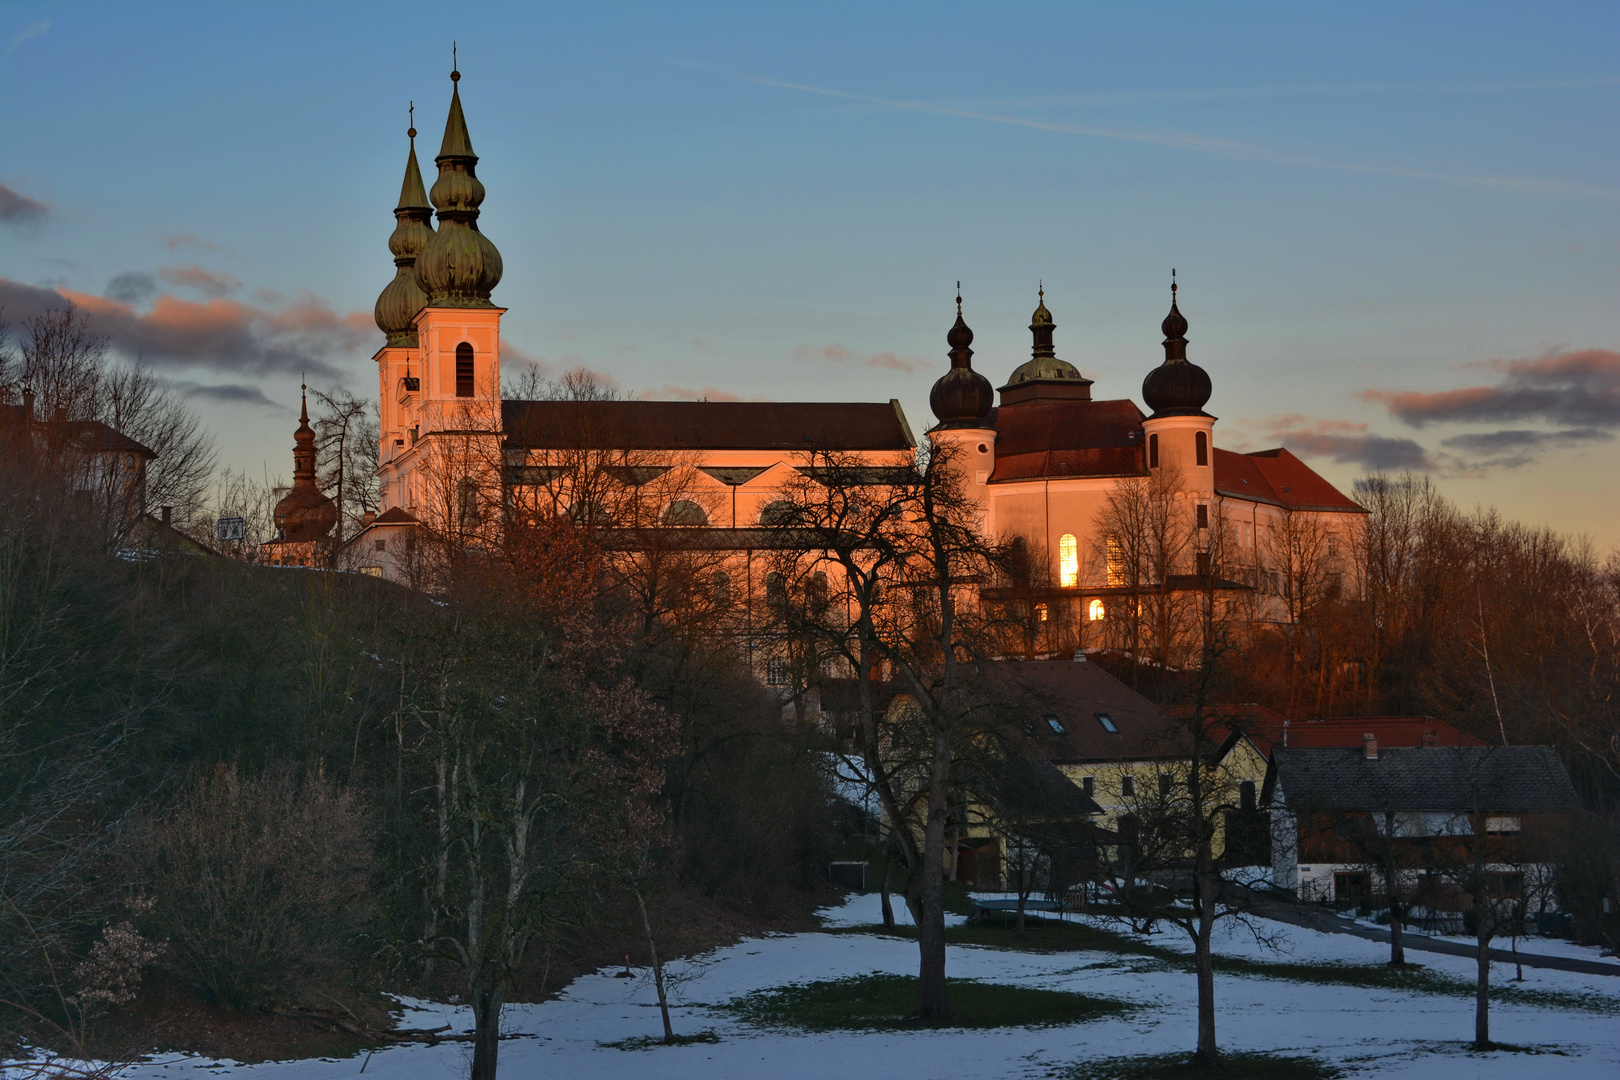 Wallfahrtskirche Maria Puchheim im Abendlicht...